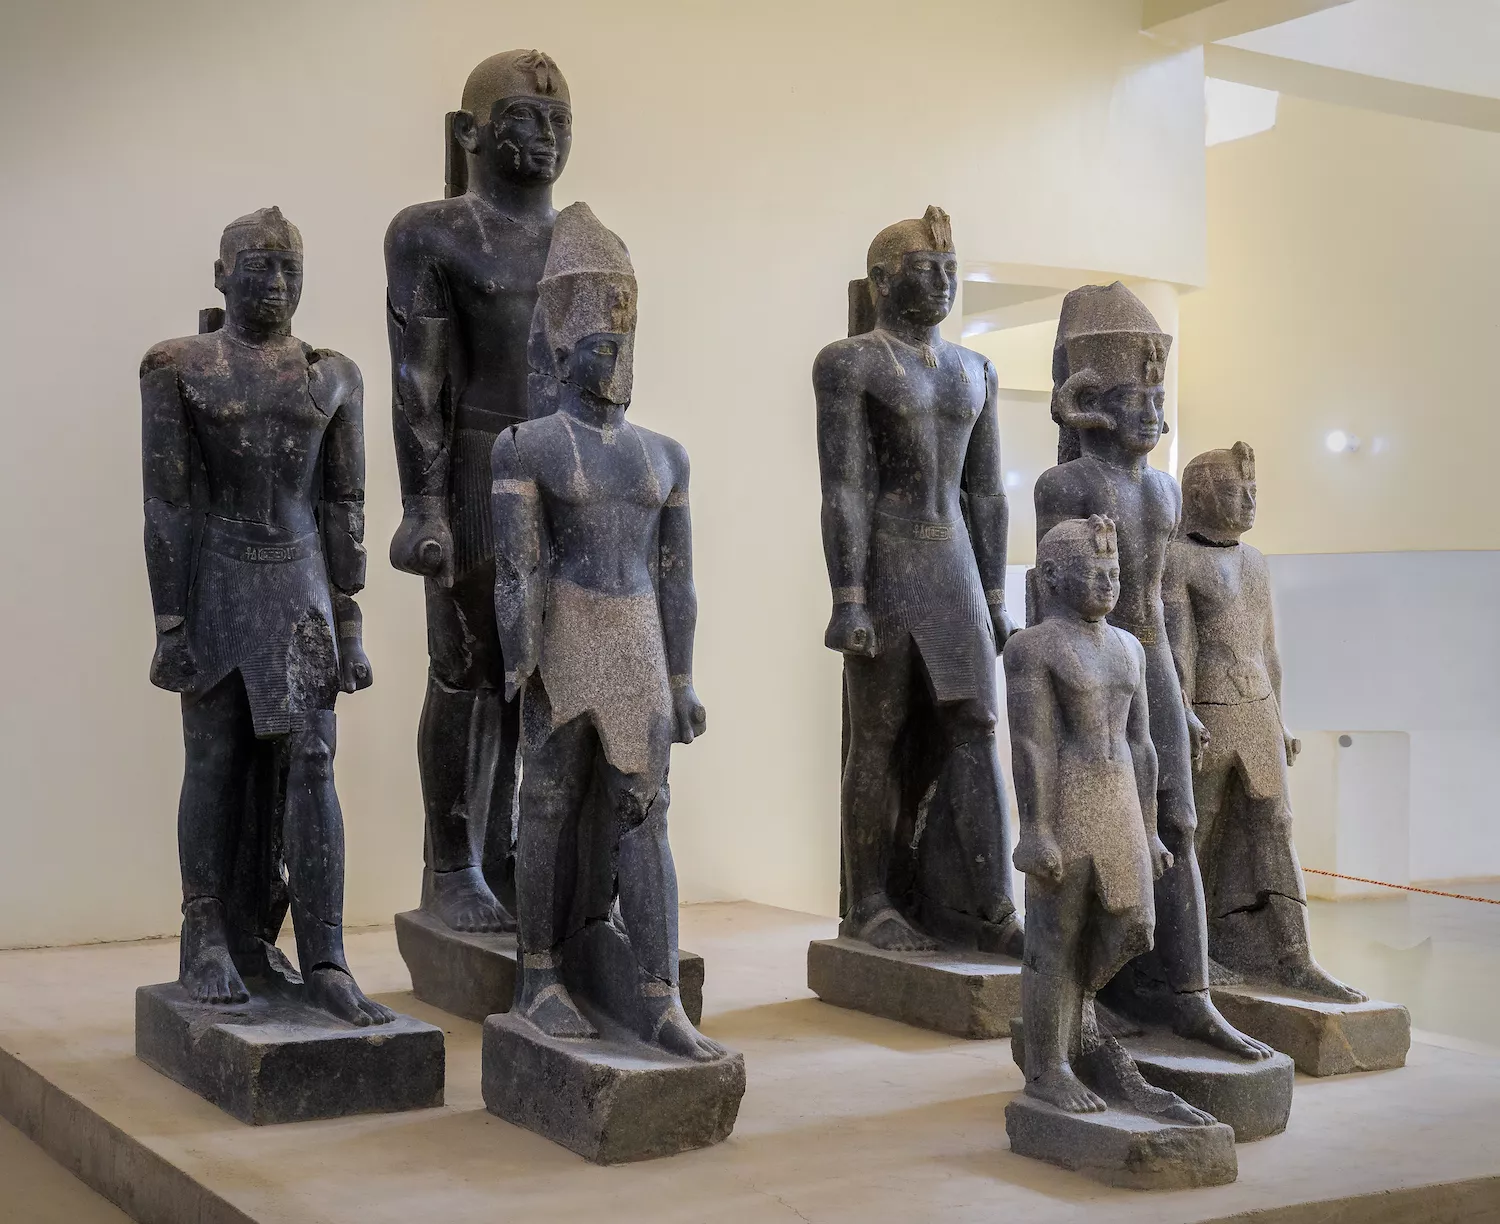 Estàtues de faraons i reis egipcis negres exhibides al museu del jaciment arqueològic de Kerma, al Sudan